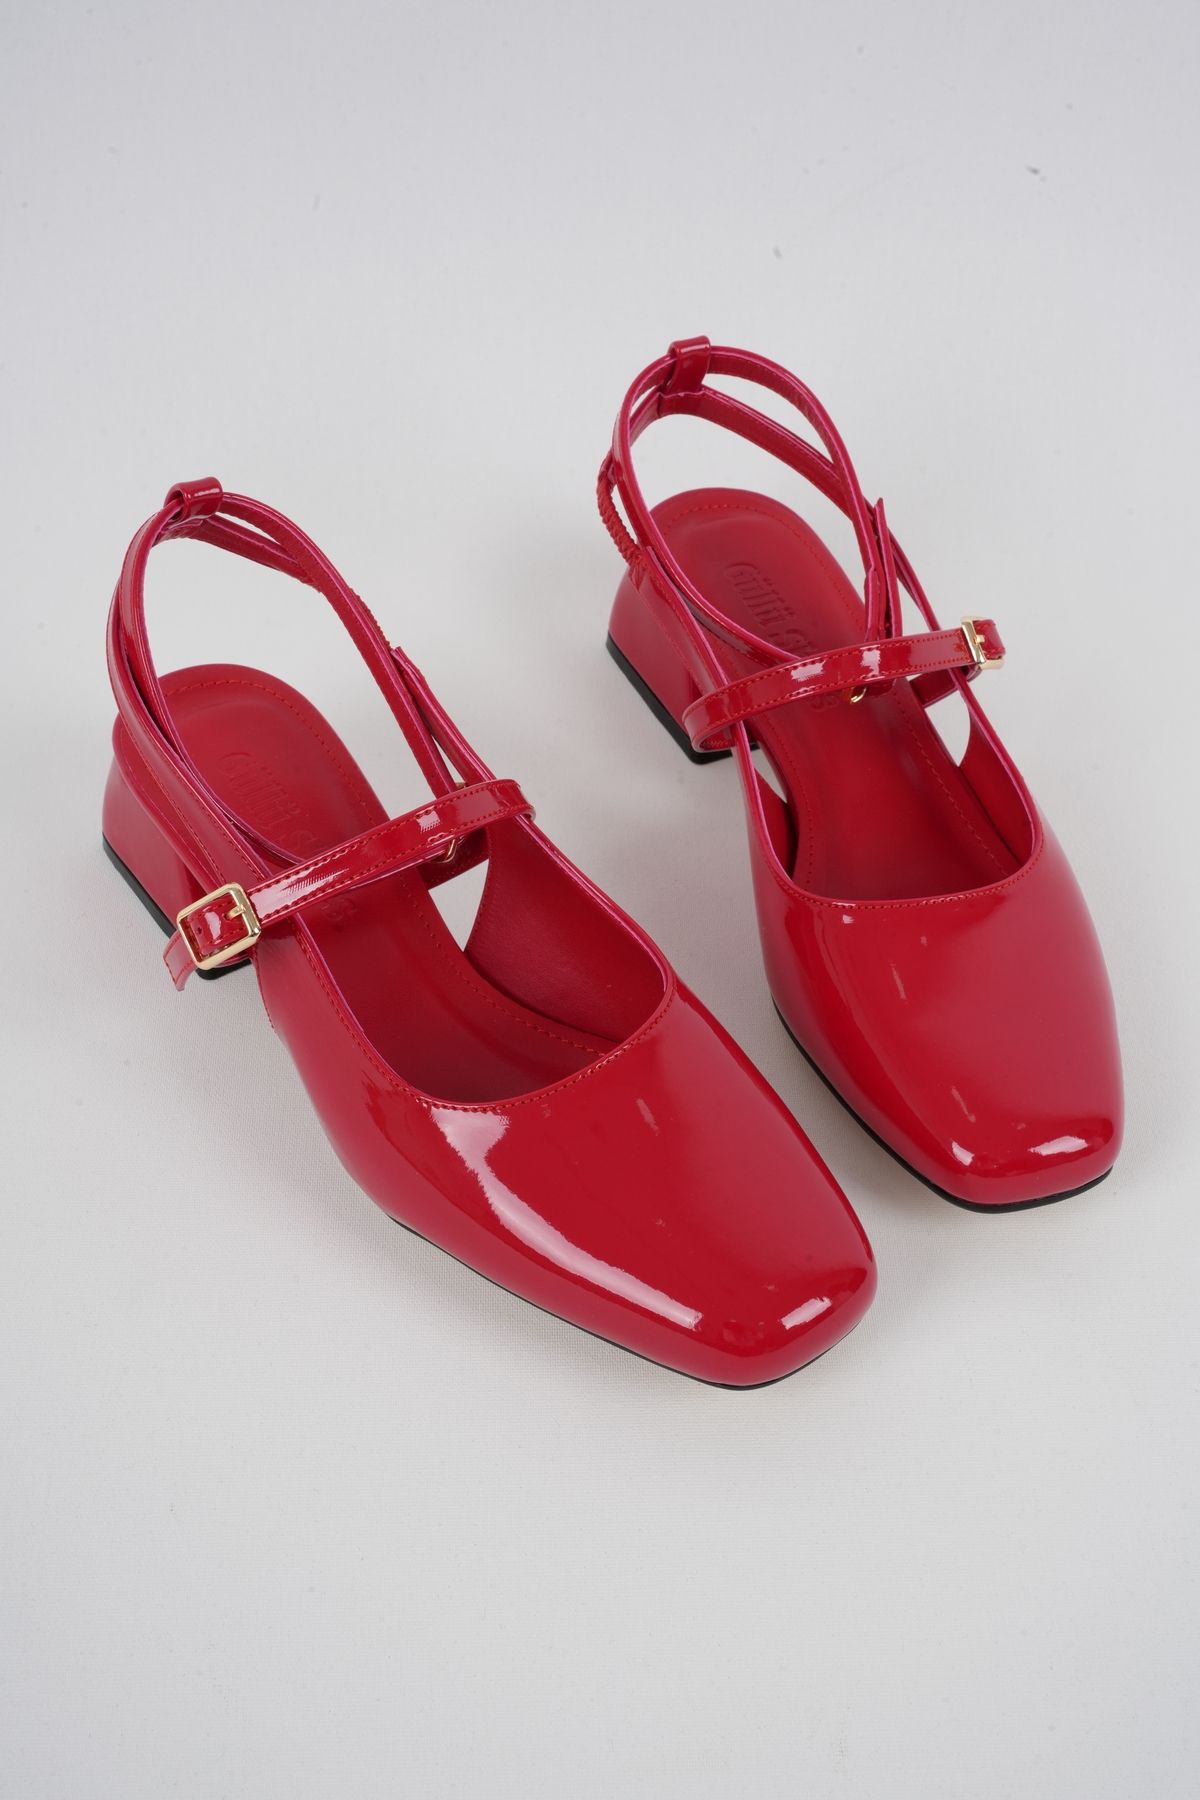 Güllü Shoes Kadın Topuklu Ayakkabı Mary Jane Rugan Arkası Açık Kare Burunlu Baretli Orta Topuklu